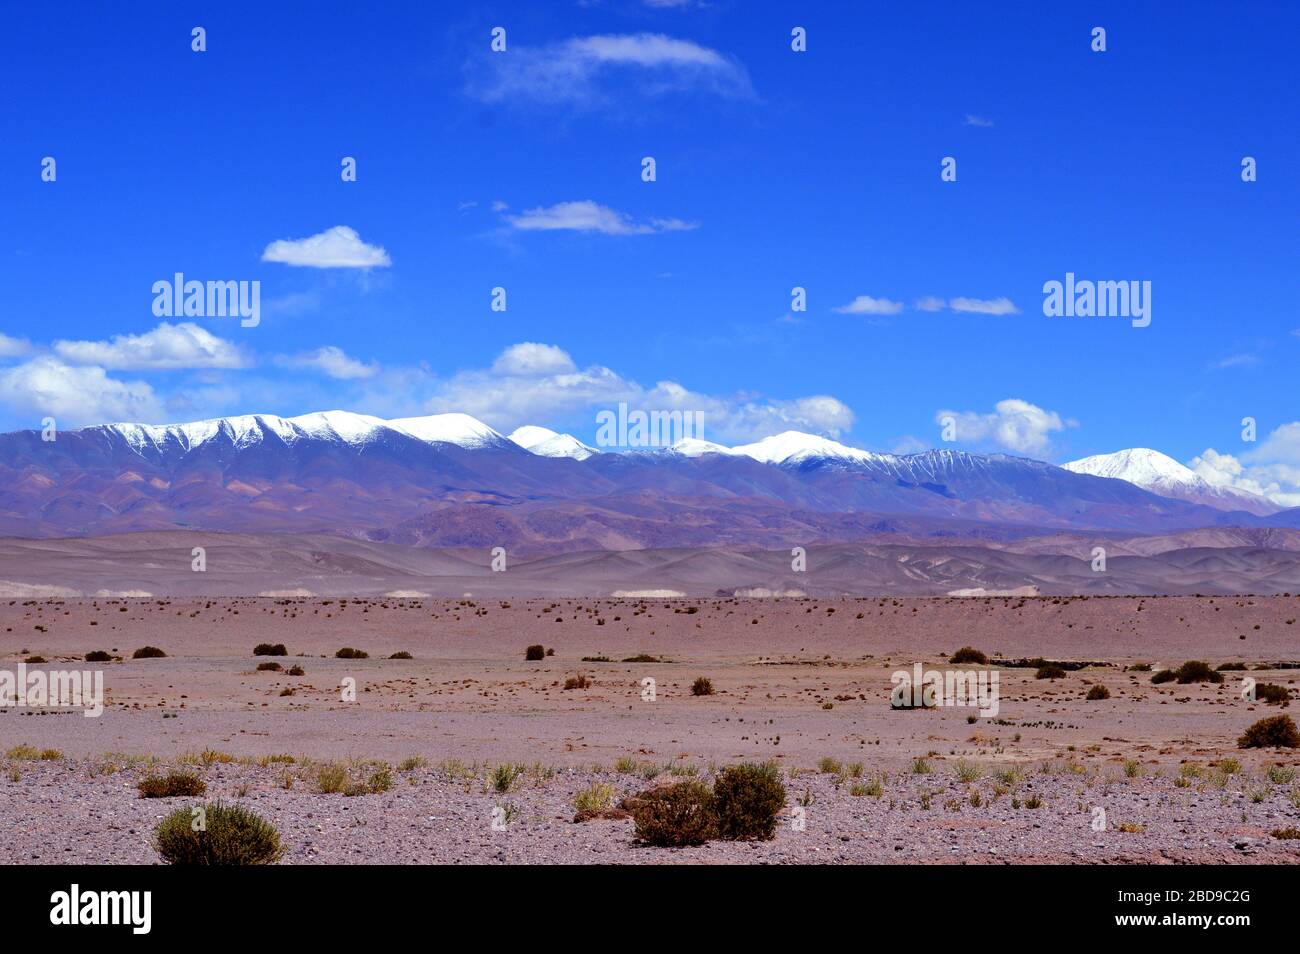 Cachi Bergkette, mit dem berühmten verschneiten rechts, aus der Nähe von Santa Rosa de los Pastos Grandes gesehen. Salta, Argentinien Stockfoto